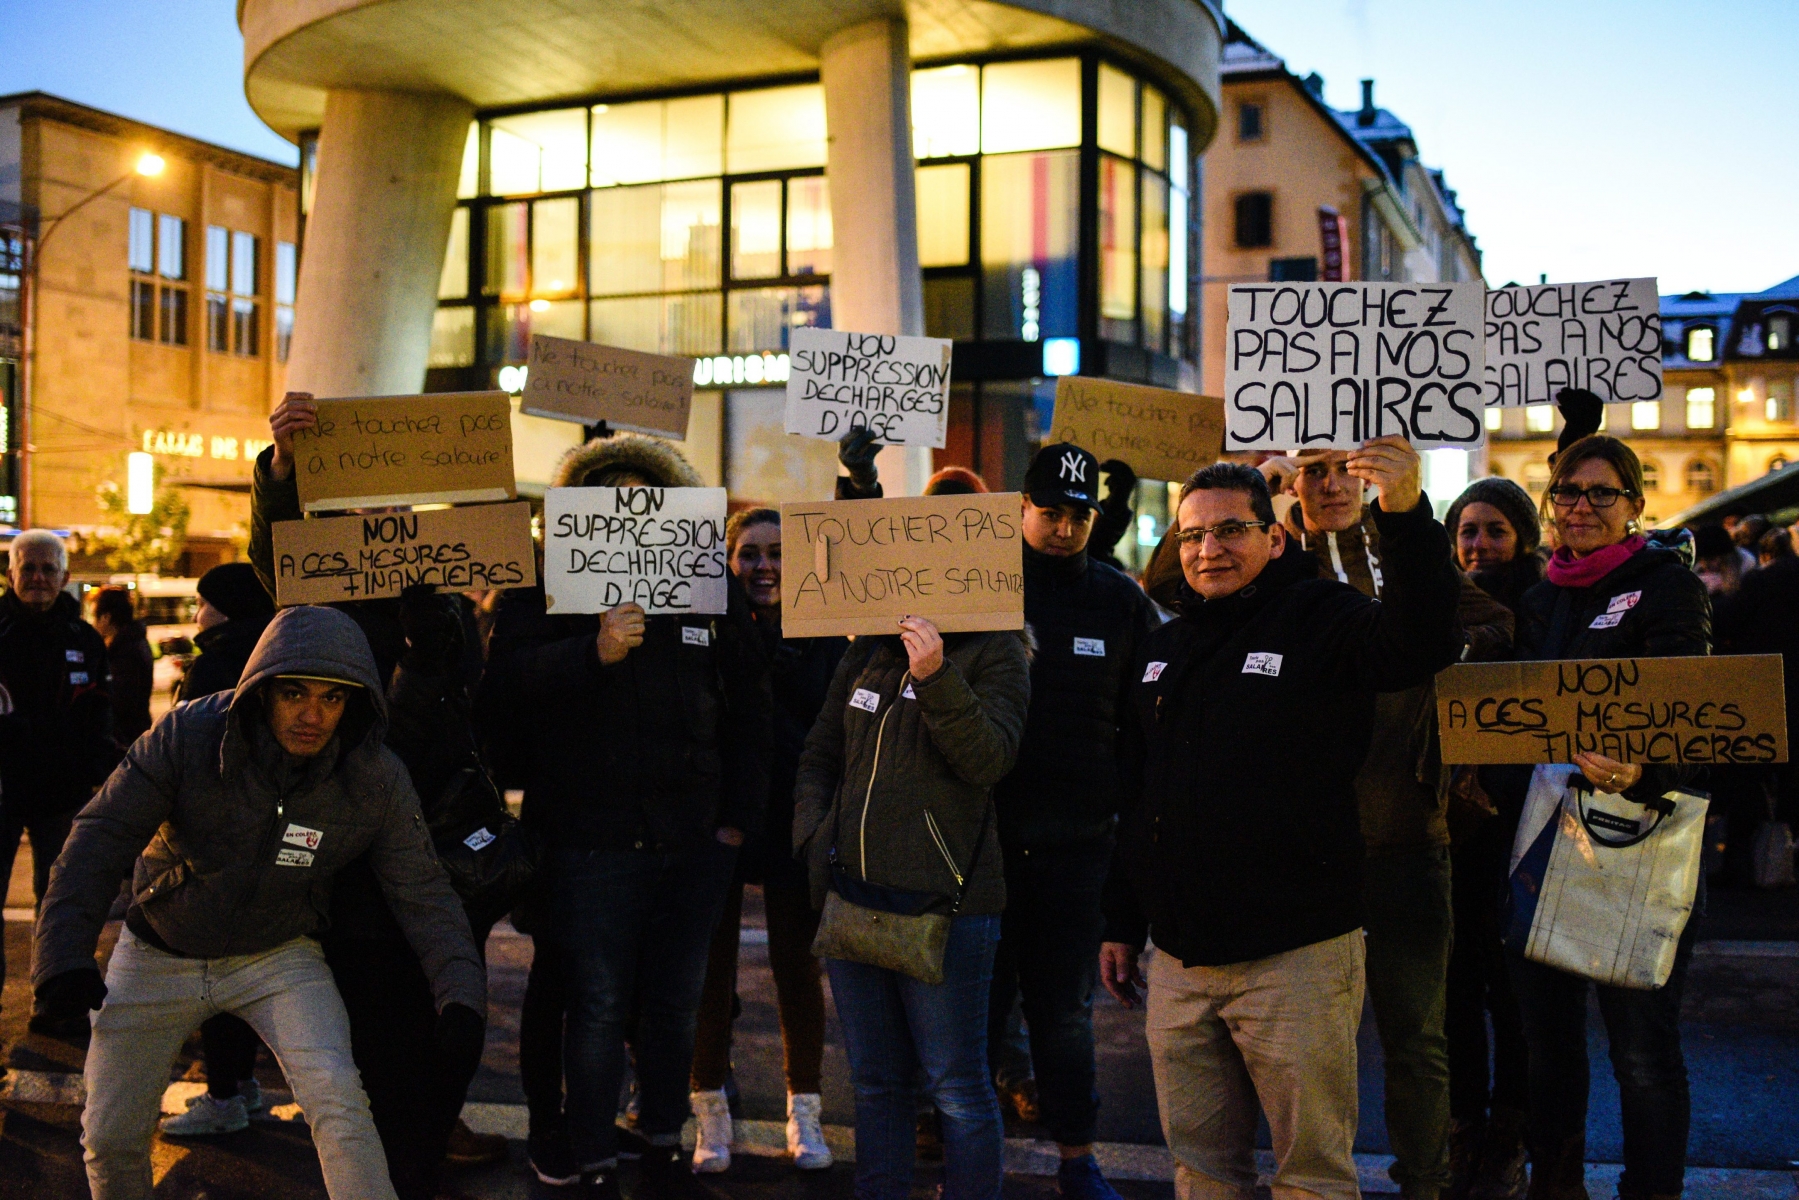 Manifestation des employes communaux en soutien a la rencontre entre le syndicat SSP et le conseil communal.

LA CHAUX-DE-FONDS           7/11/2016
PHOTO: Christian Galley LA  CHAUX-DE-FONDS